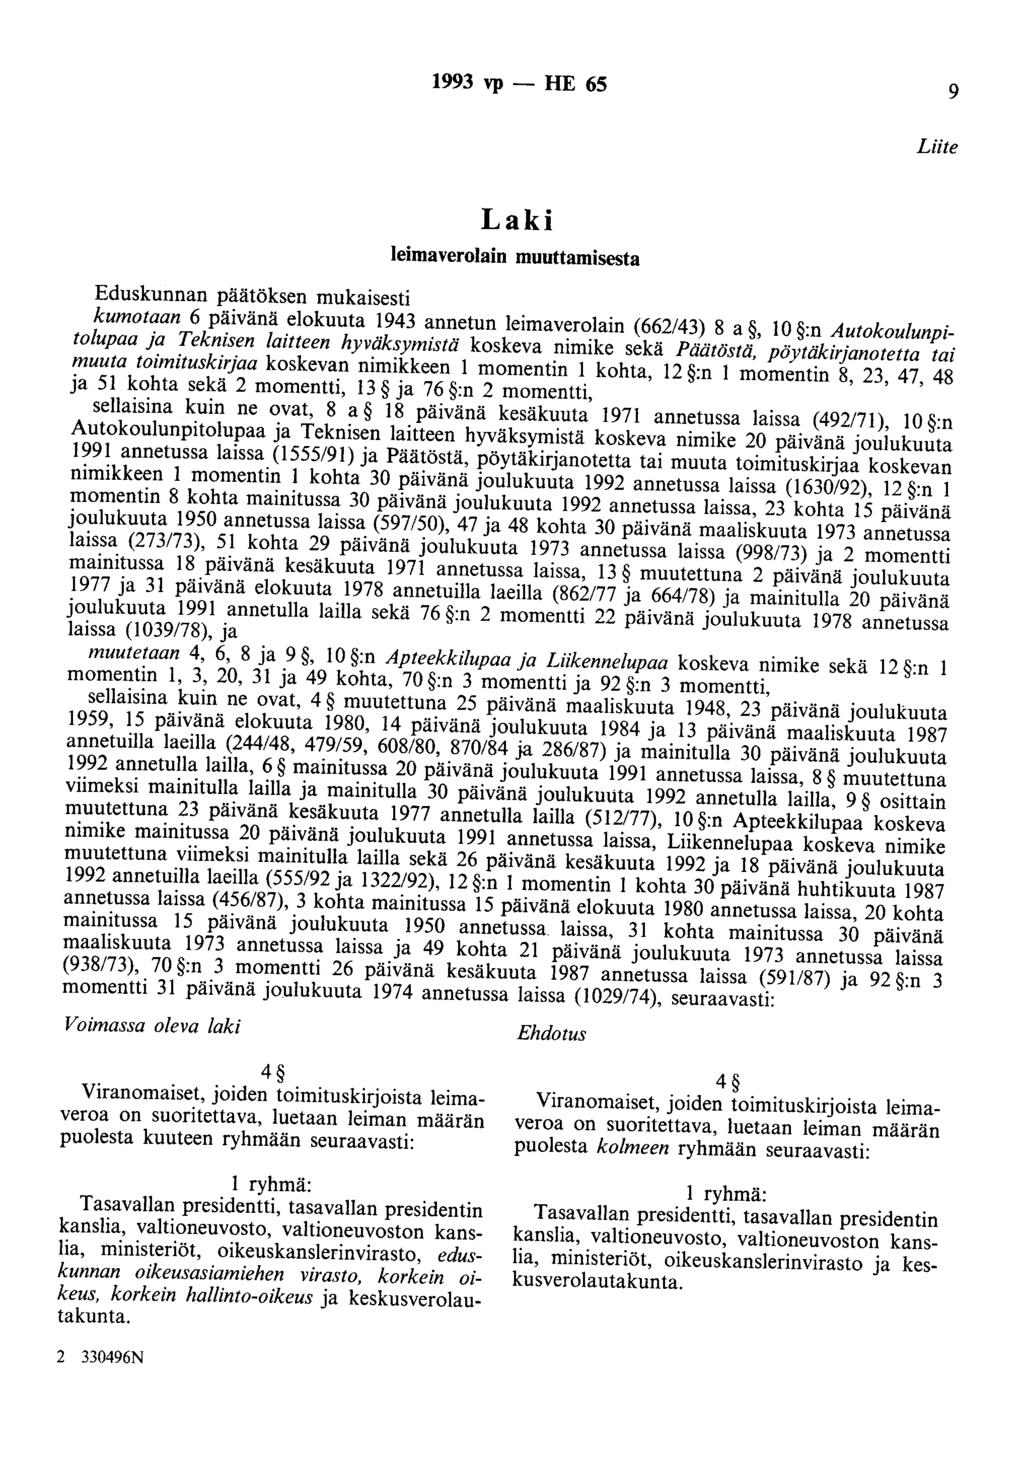 1993 vp - HE 65 9 Liite Laki leimaverolain muuttamisesta Eduskunnan päätöksen mukaisesti kumotaan 6 päivänä elokuuta 1943 annetun leimaverolain (662/43) 8 a, 10 :n Autokoulunpitolupaa ja Teknisen